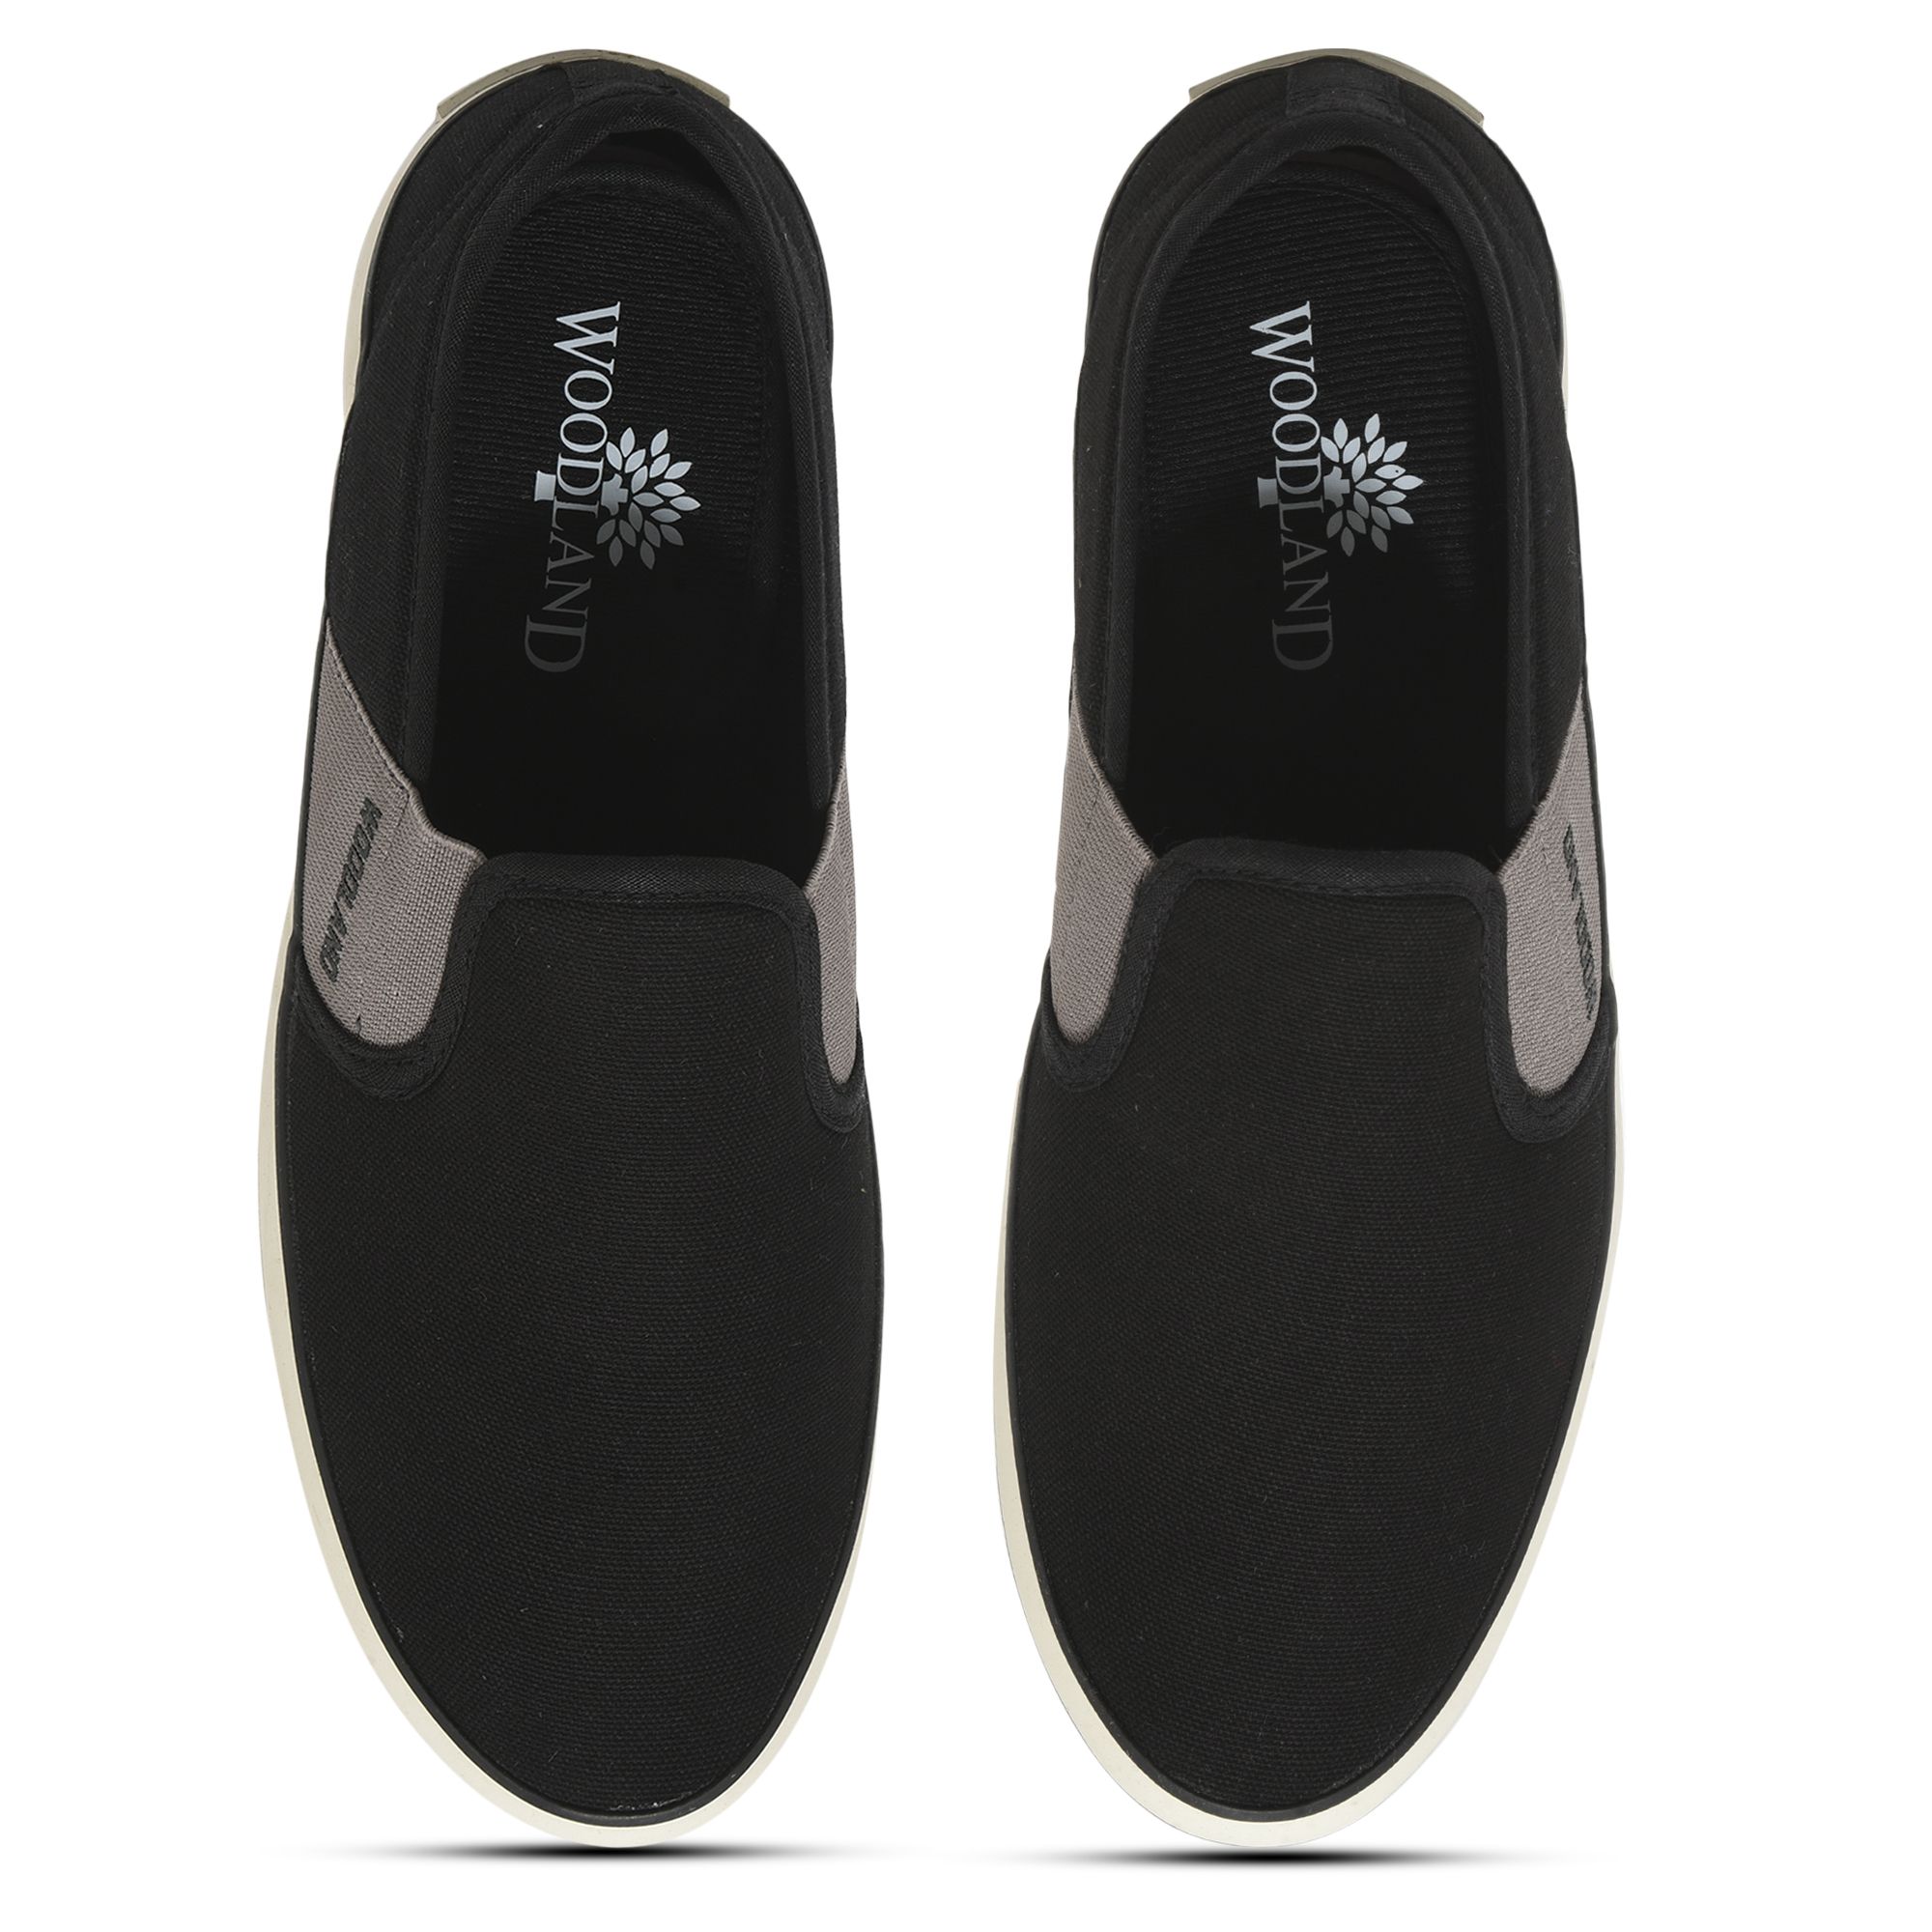 Black/LGrey Slip-on shoe for men